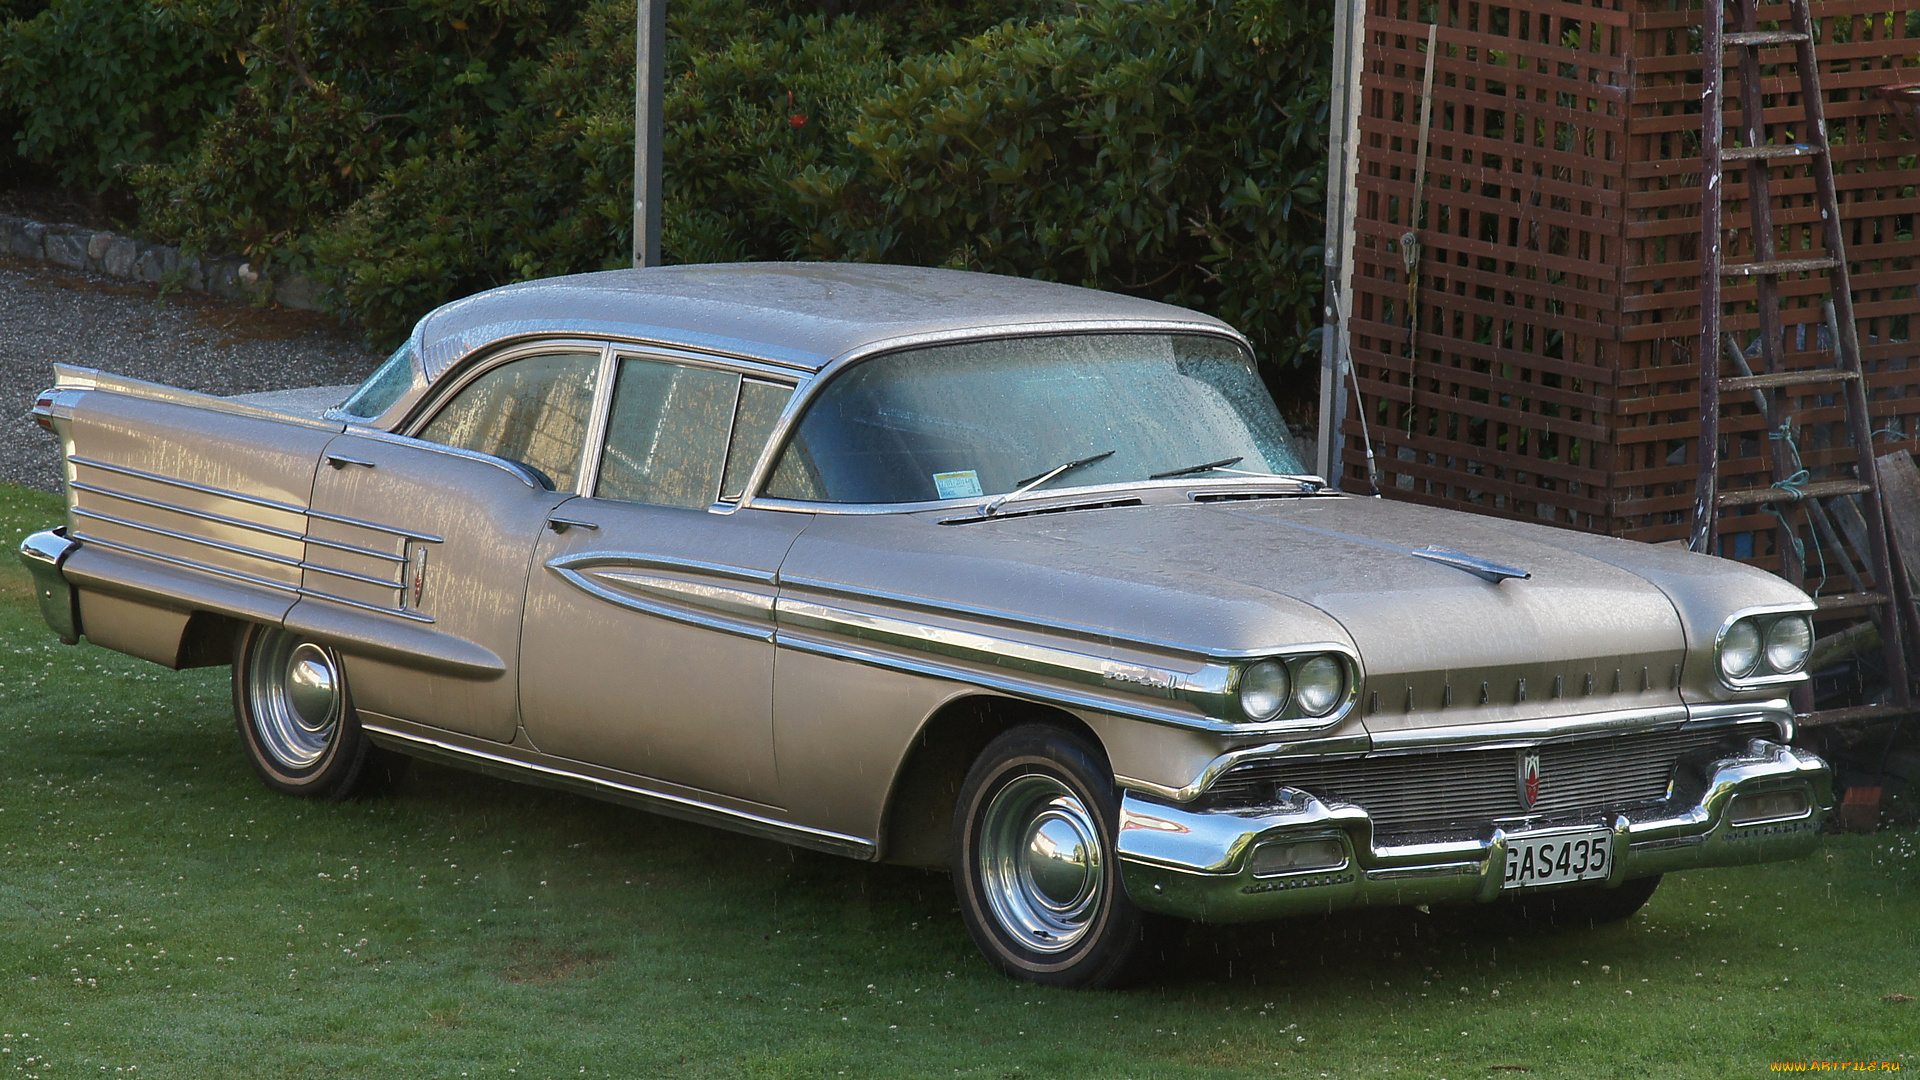 1958, oldsmobile, royale, classic, car, автомобили, выставки, и, уличные, фото, классические, сша, oldsmobile, general, motors